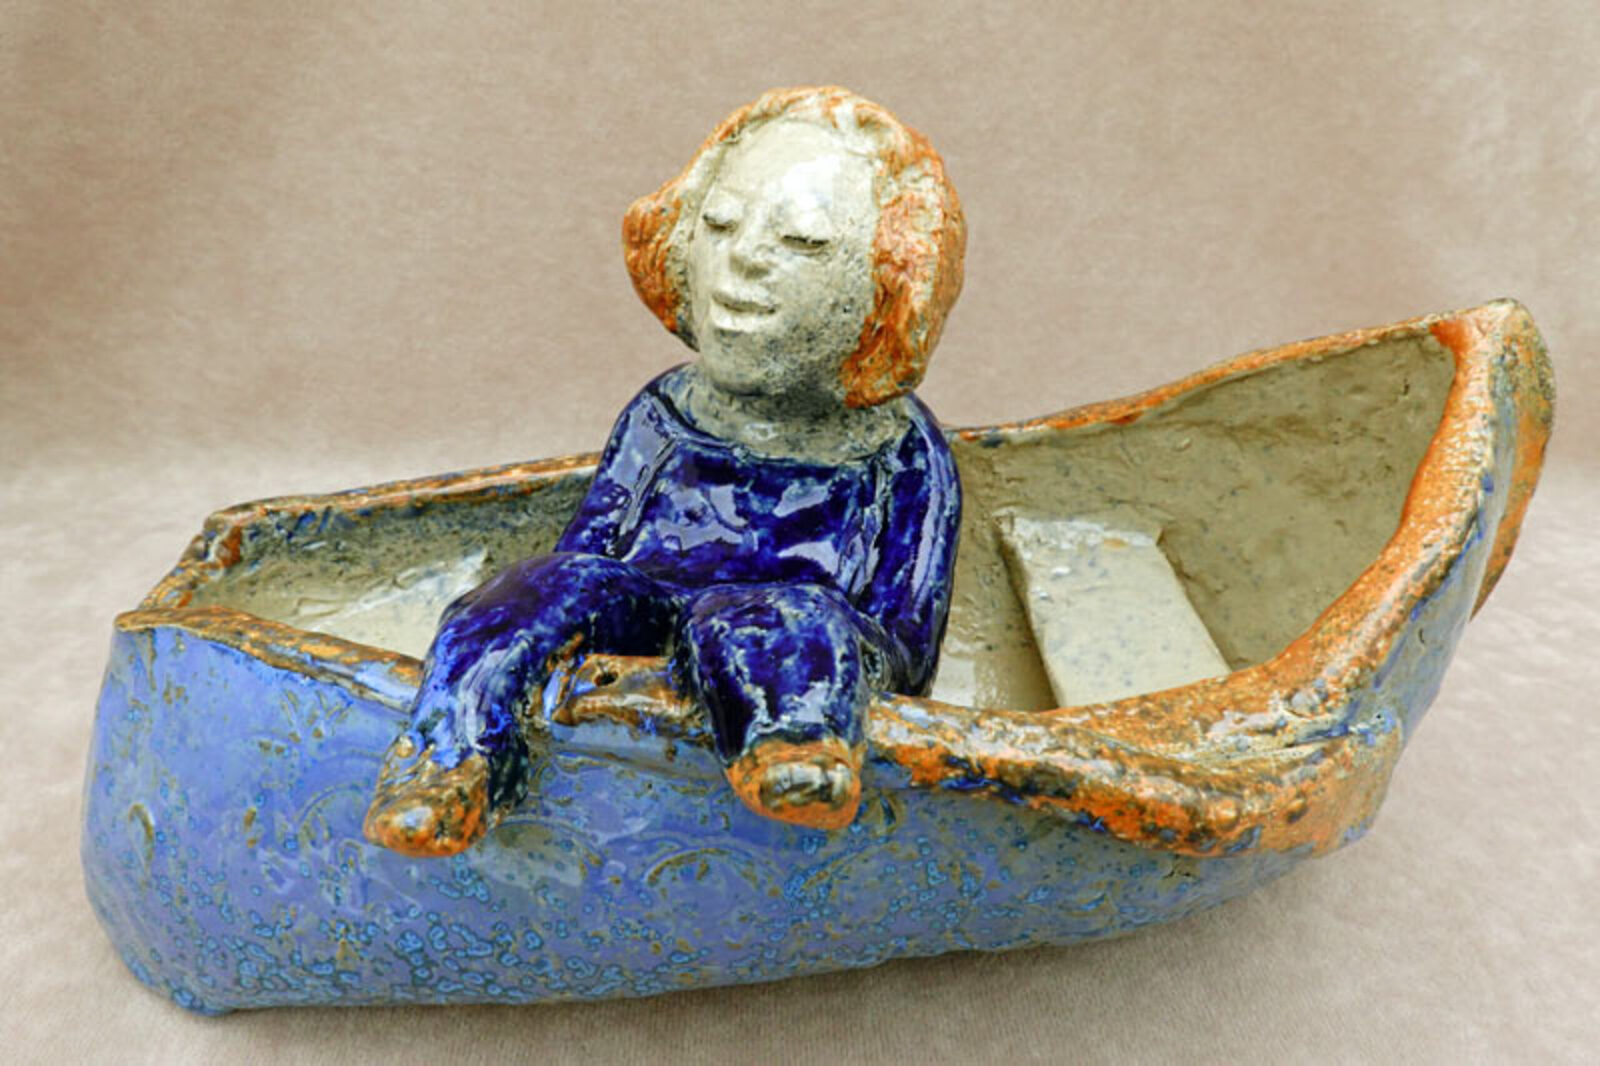 Rust in een roeiboot - Ruhe im Ruderboot - at rest in a rowing boat -  repos dans une barque